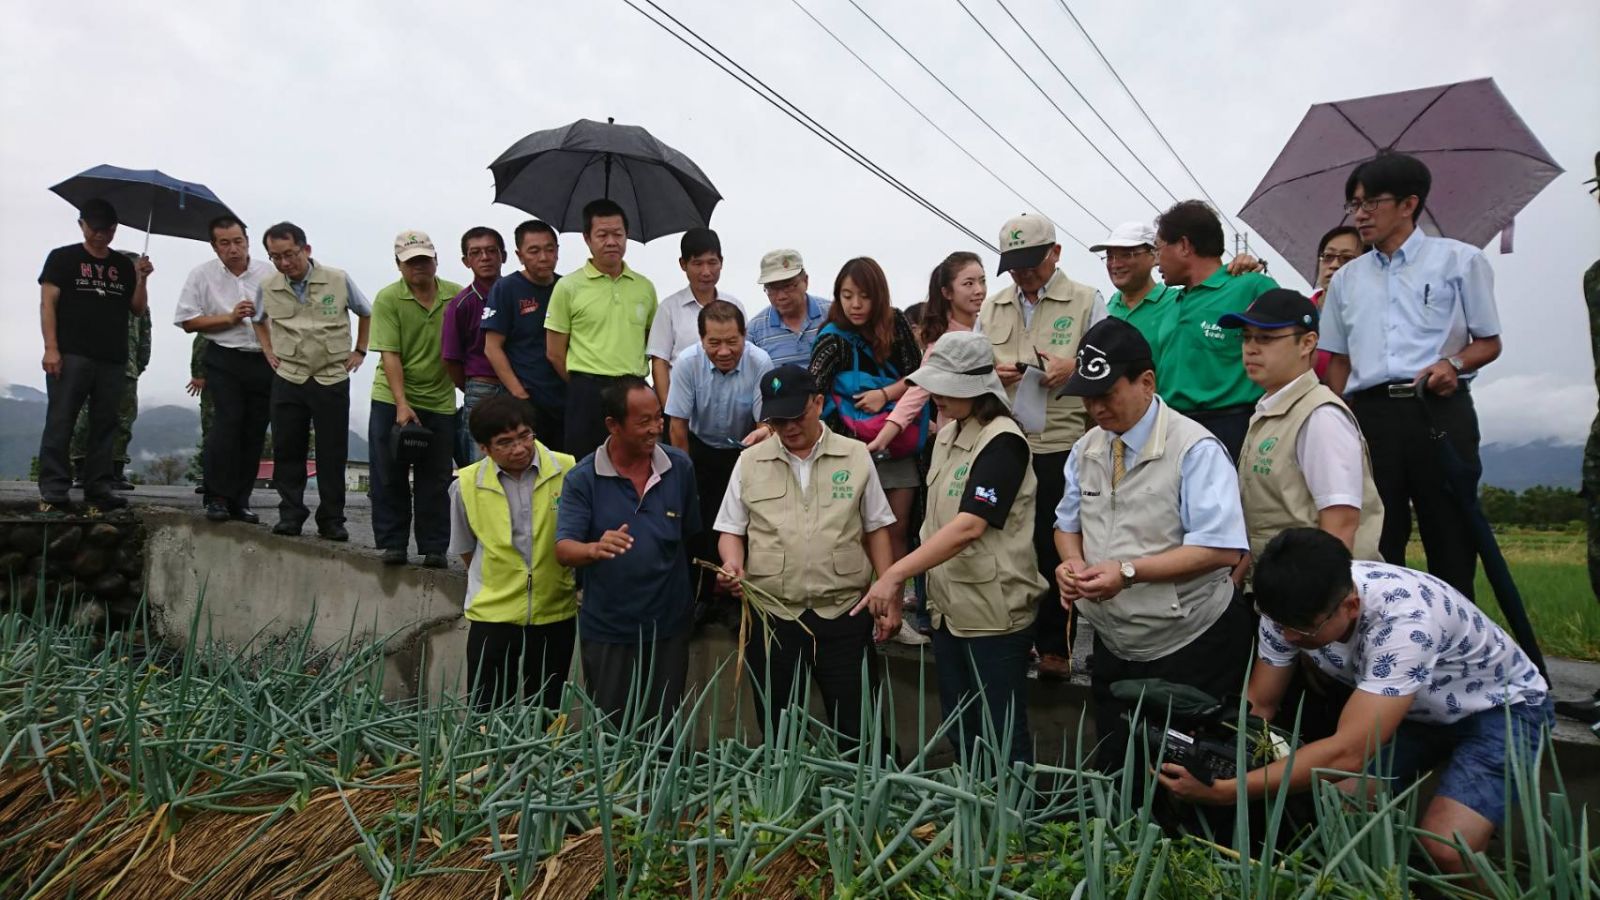 農委會林主委赴宜蘭視察農損 指示全力協助農民儘速恢復生產 | 文章內置圖片